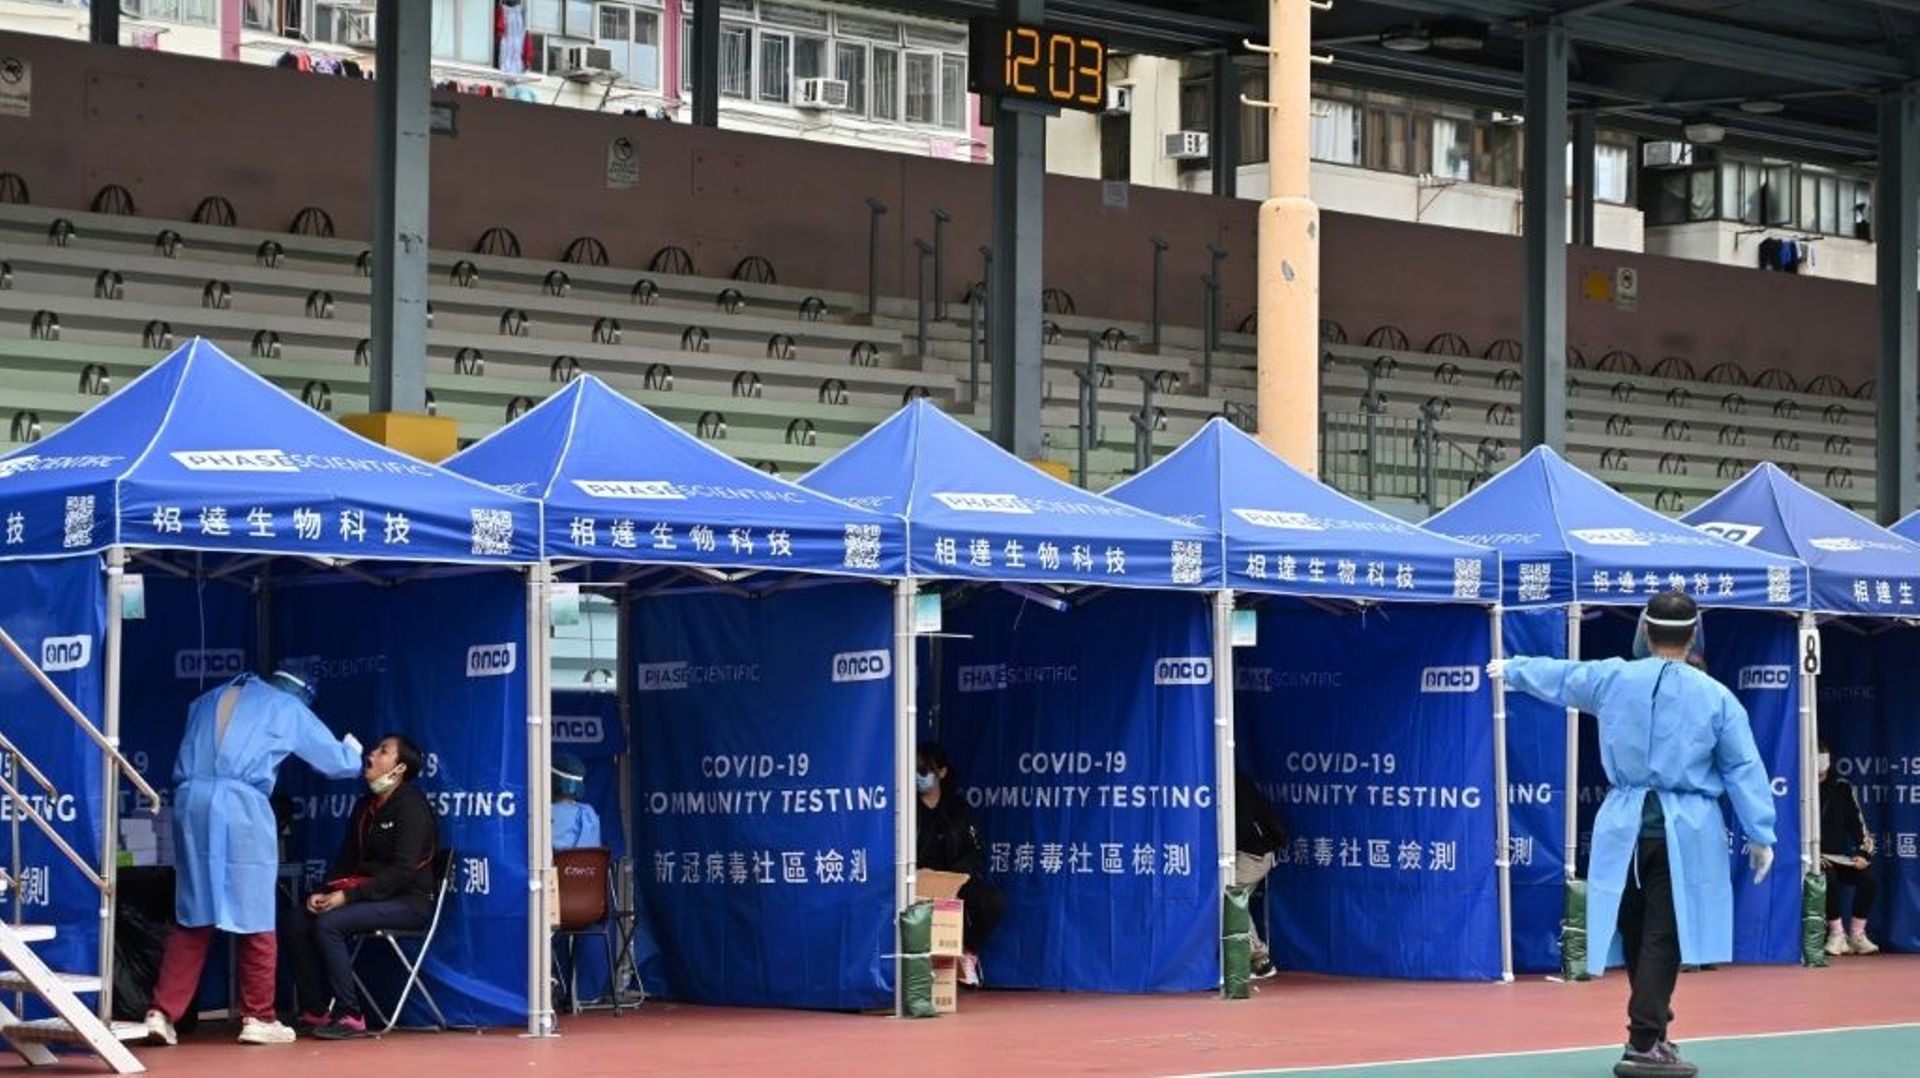 Un responsable indique une place disponible lors d’une opération de dépistage du Covid-19 dans un quartier de Hong Kong après un record d’infections.